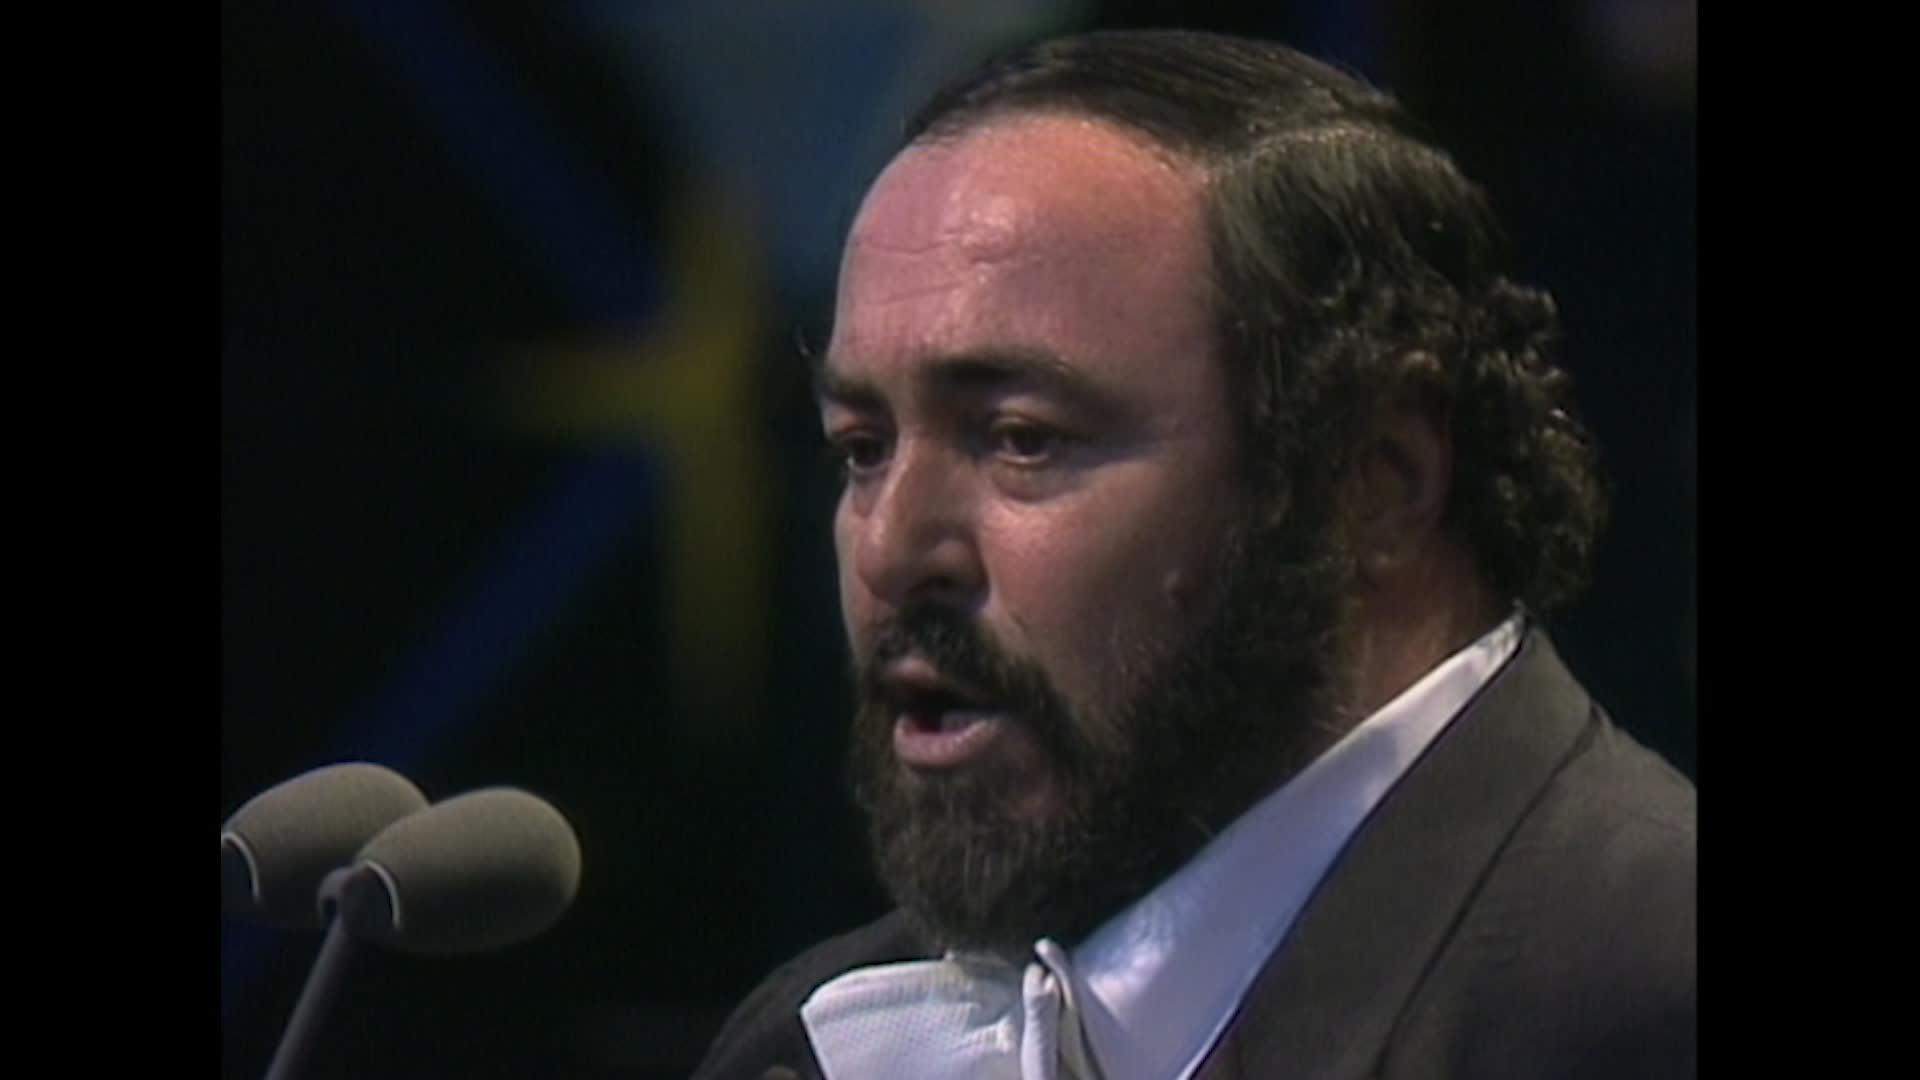 Luciano Pavarotti - Bixio: La mia canzone al vento (Arr. Mancini) (Live)